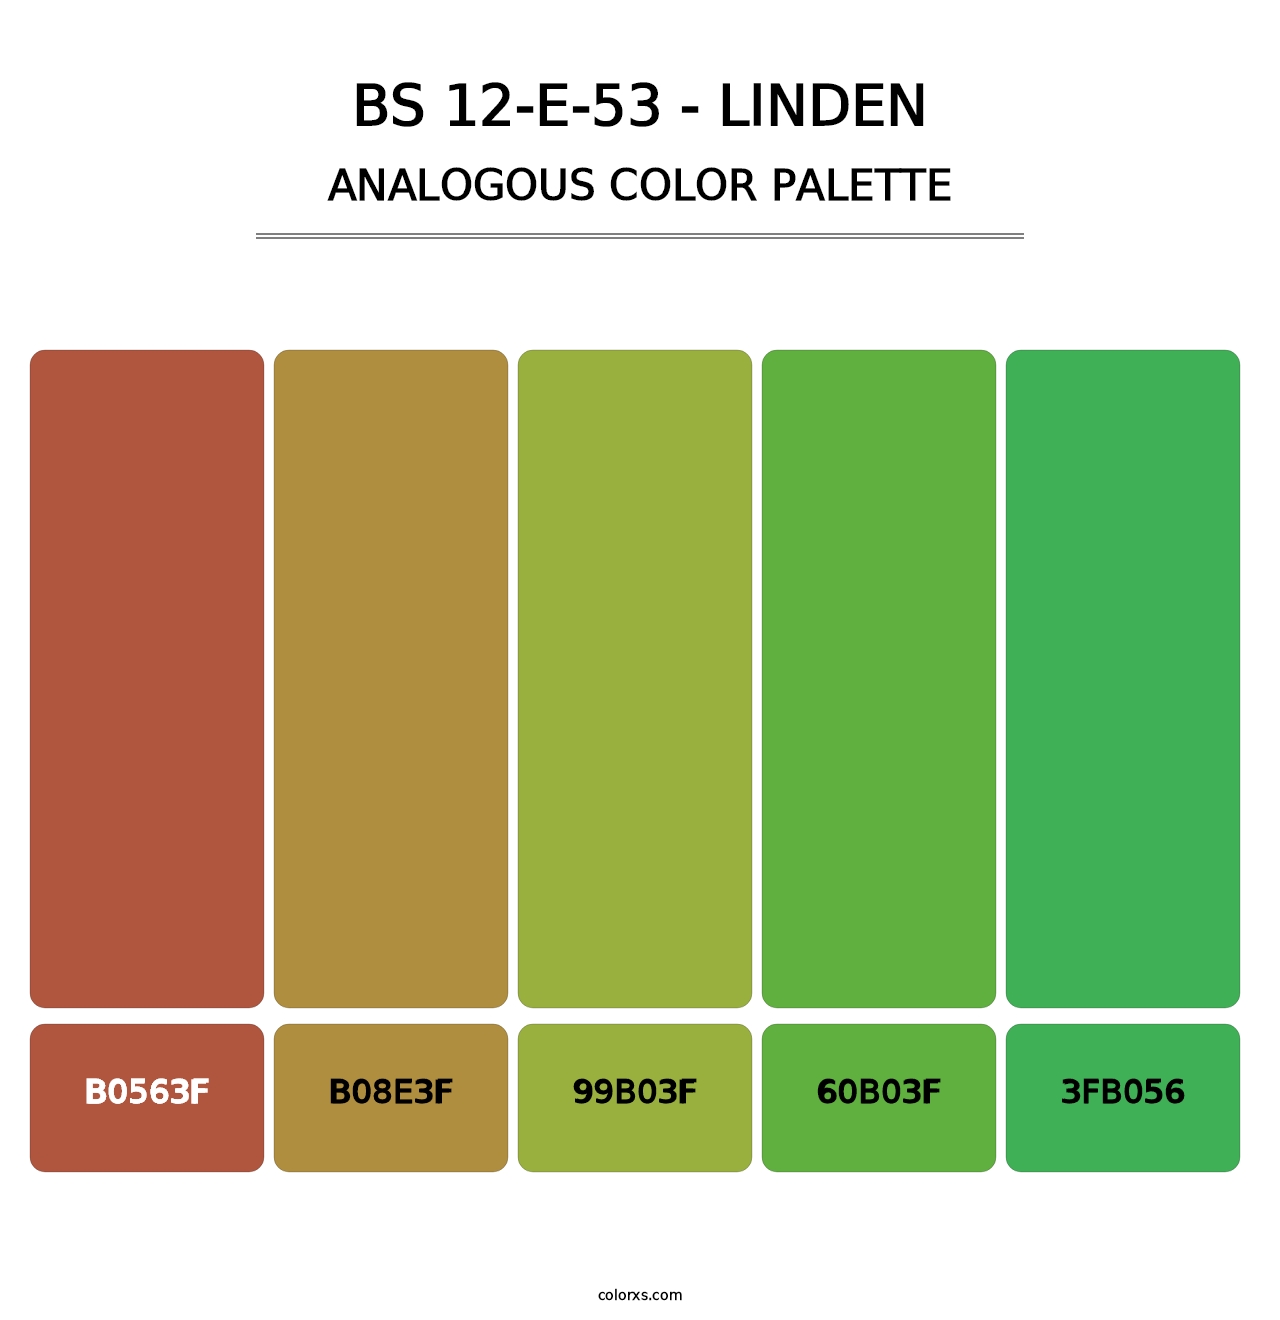 BS 12-E-53 - Linden - Analogous Color Palette